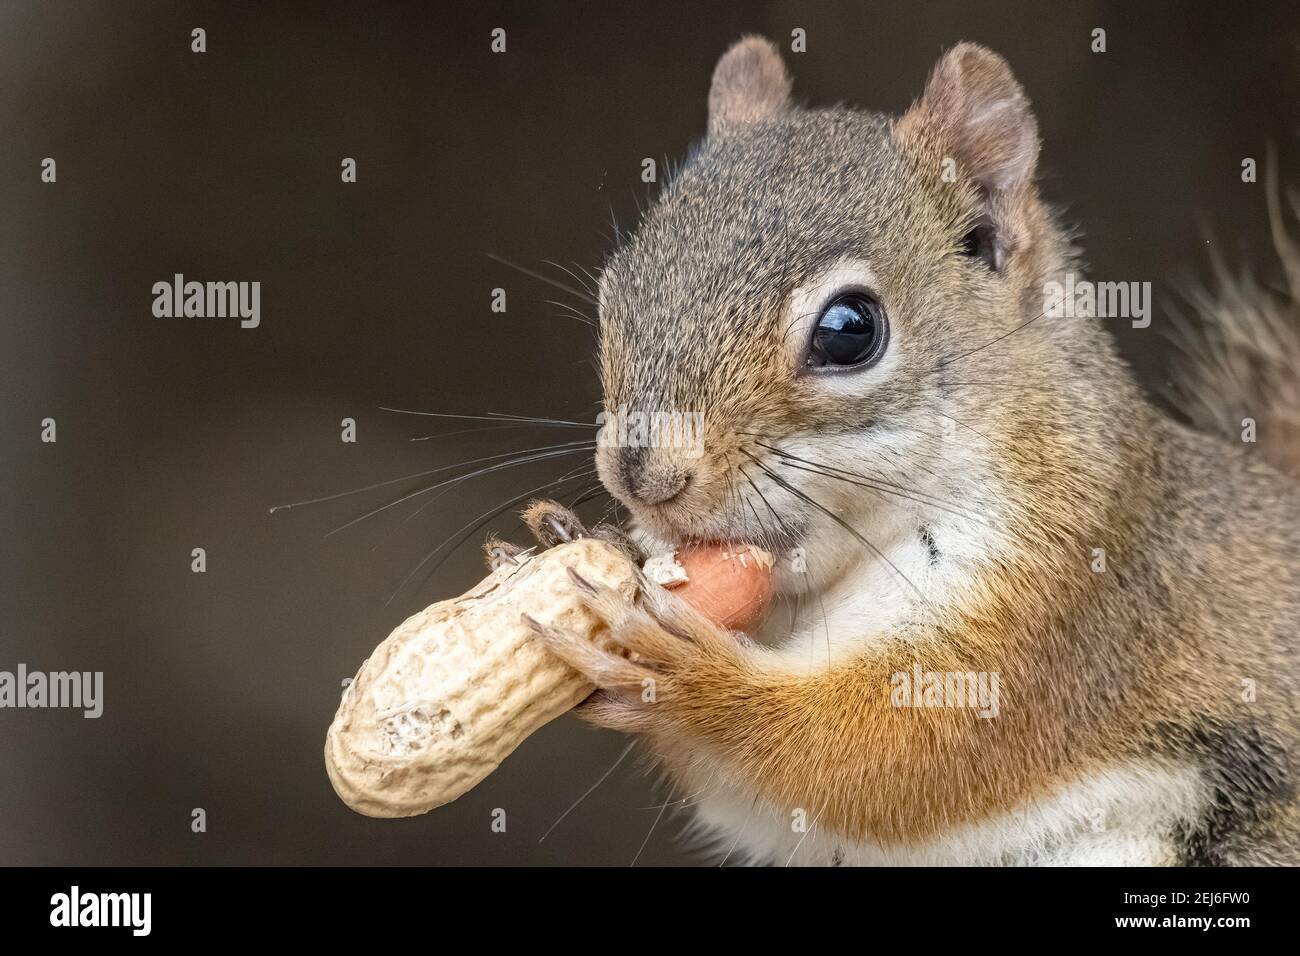 Gros plan d'un petit écureuil roux mangeant une arachide. Seulement son visage et ses pattes visibles, avec l'arachide. Beaucoup de détails. Arrière-plan sombre. Banque D'Images